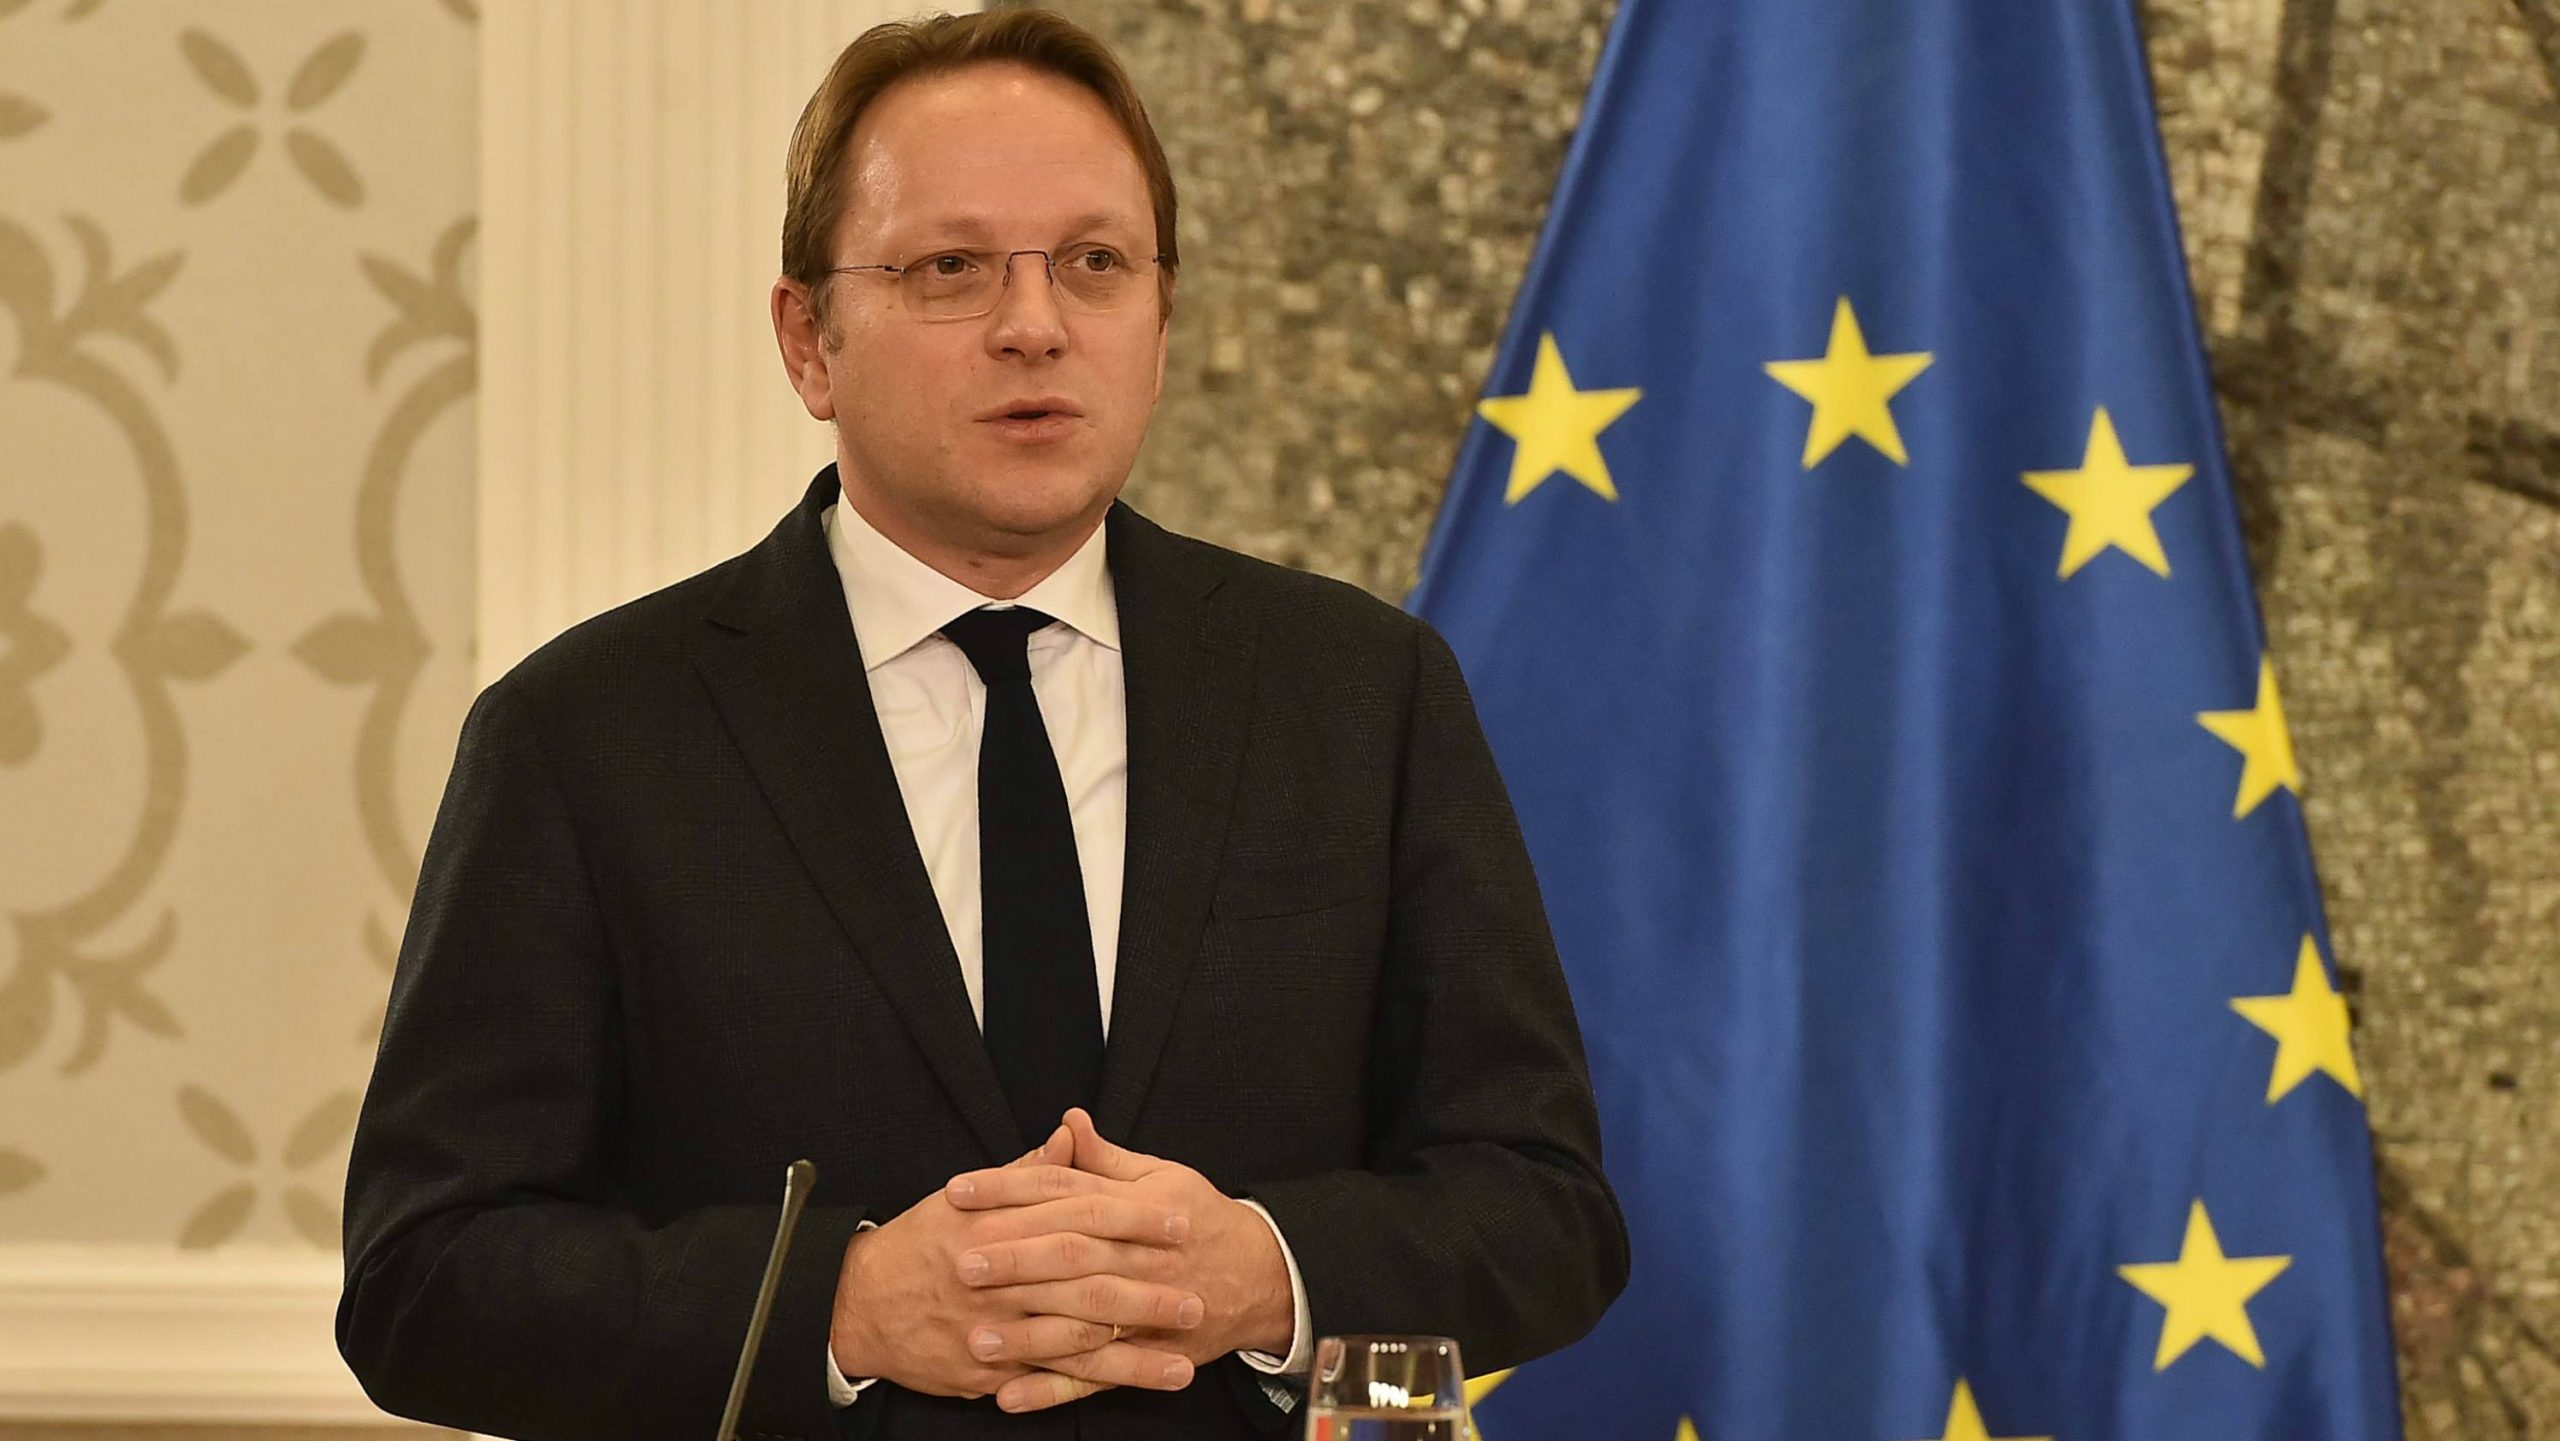 Varheji: EU će učiniti sve što može da ubrza pregovore o članstvu sa Crnom Gorom 1